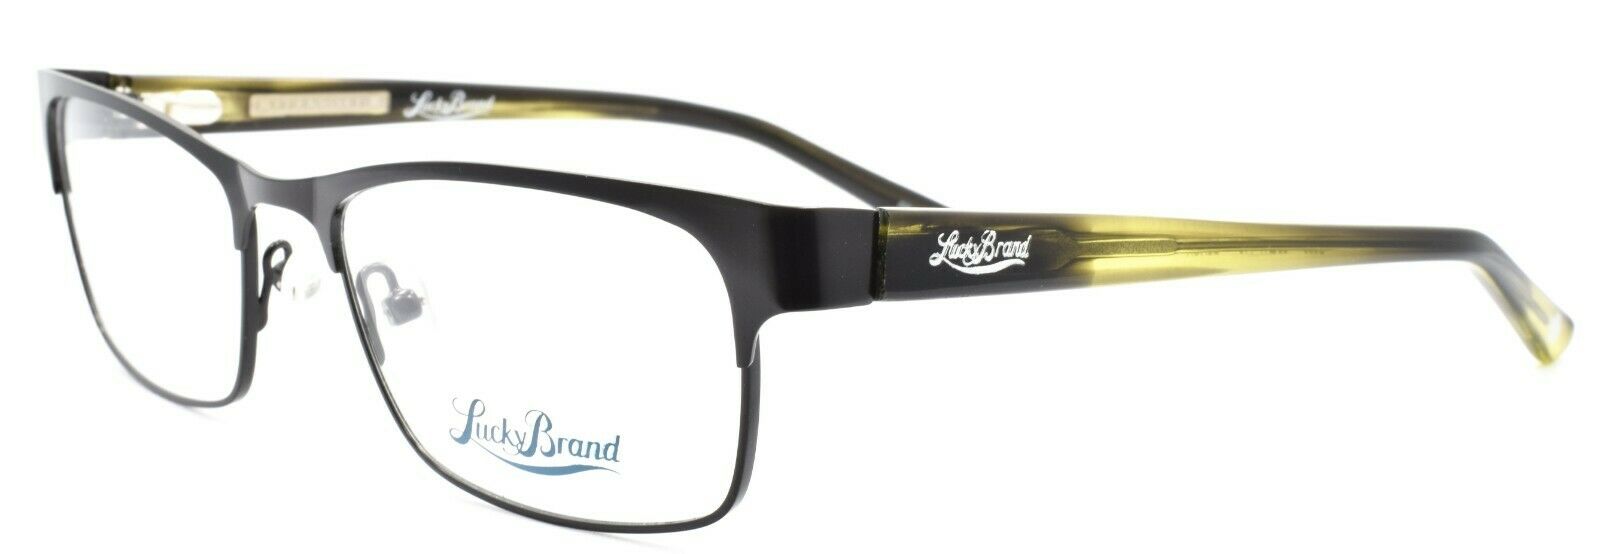 1-LUCKY BRAND D500 Men's Eyeglasses Frames 53-17-140 Black + CASE-751286275346-IKSpecs